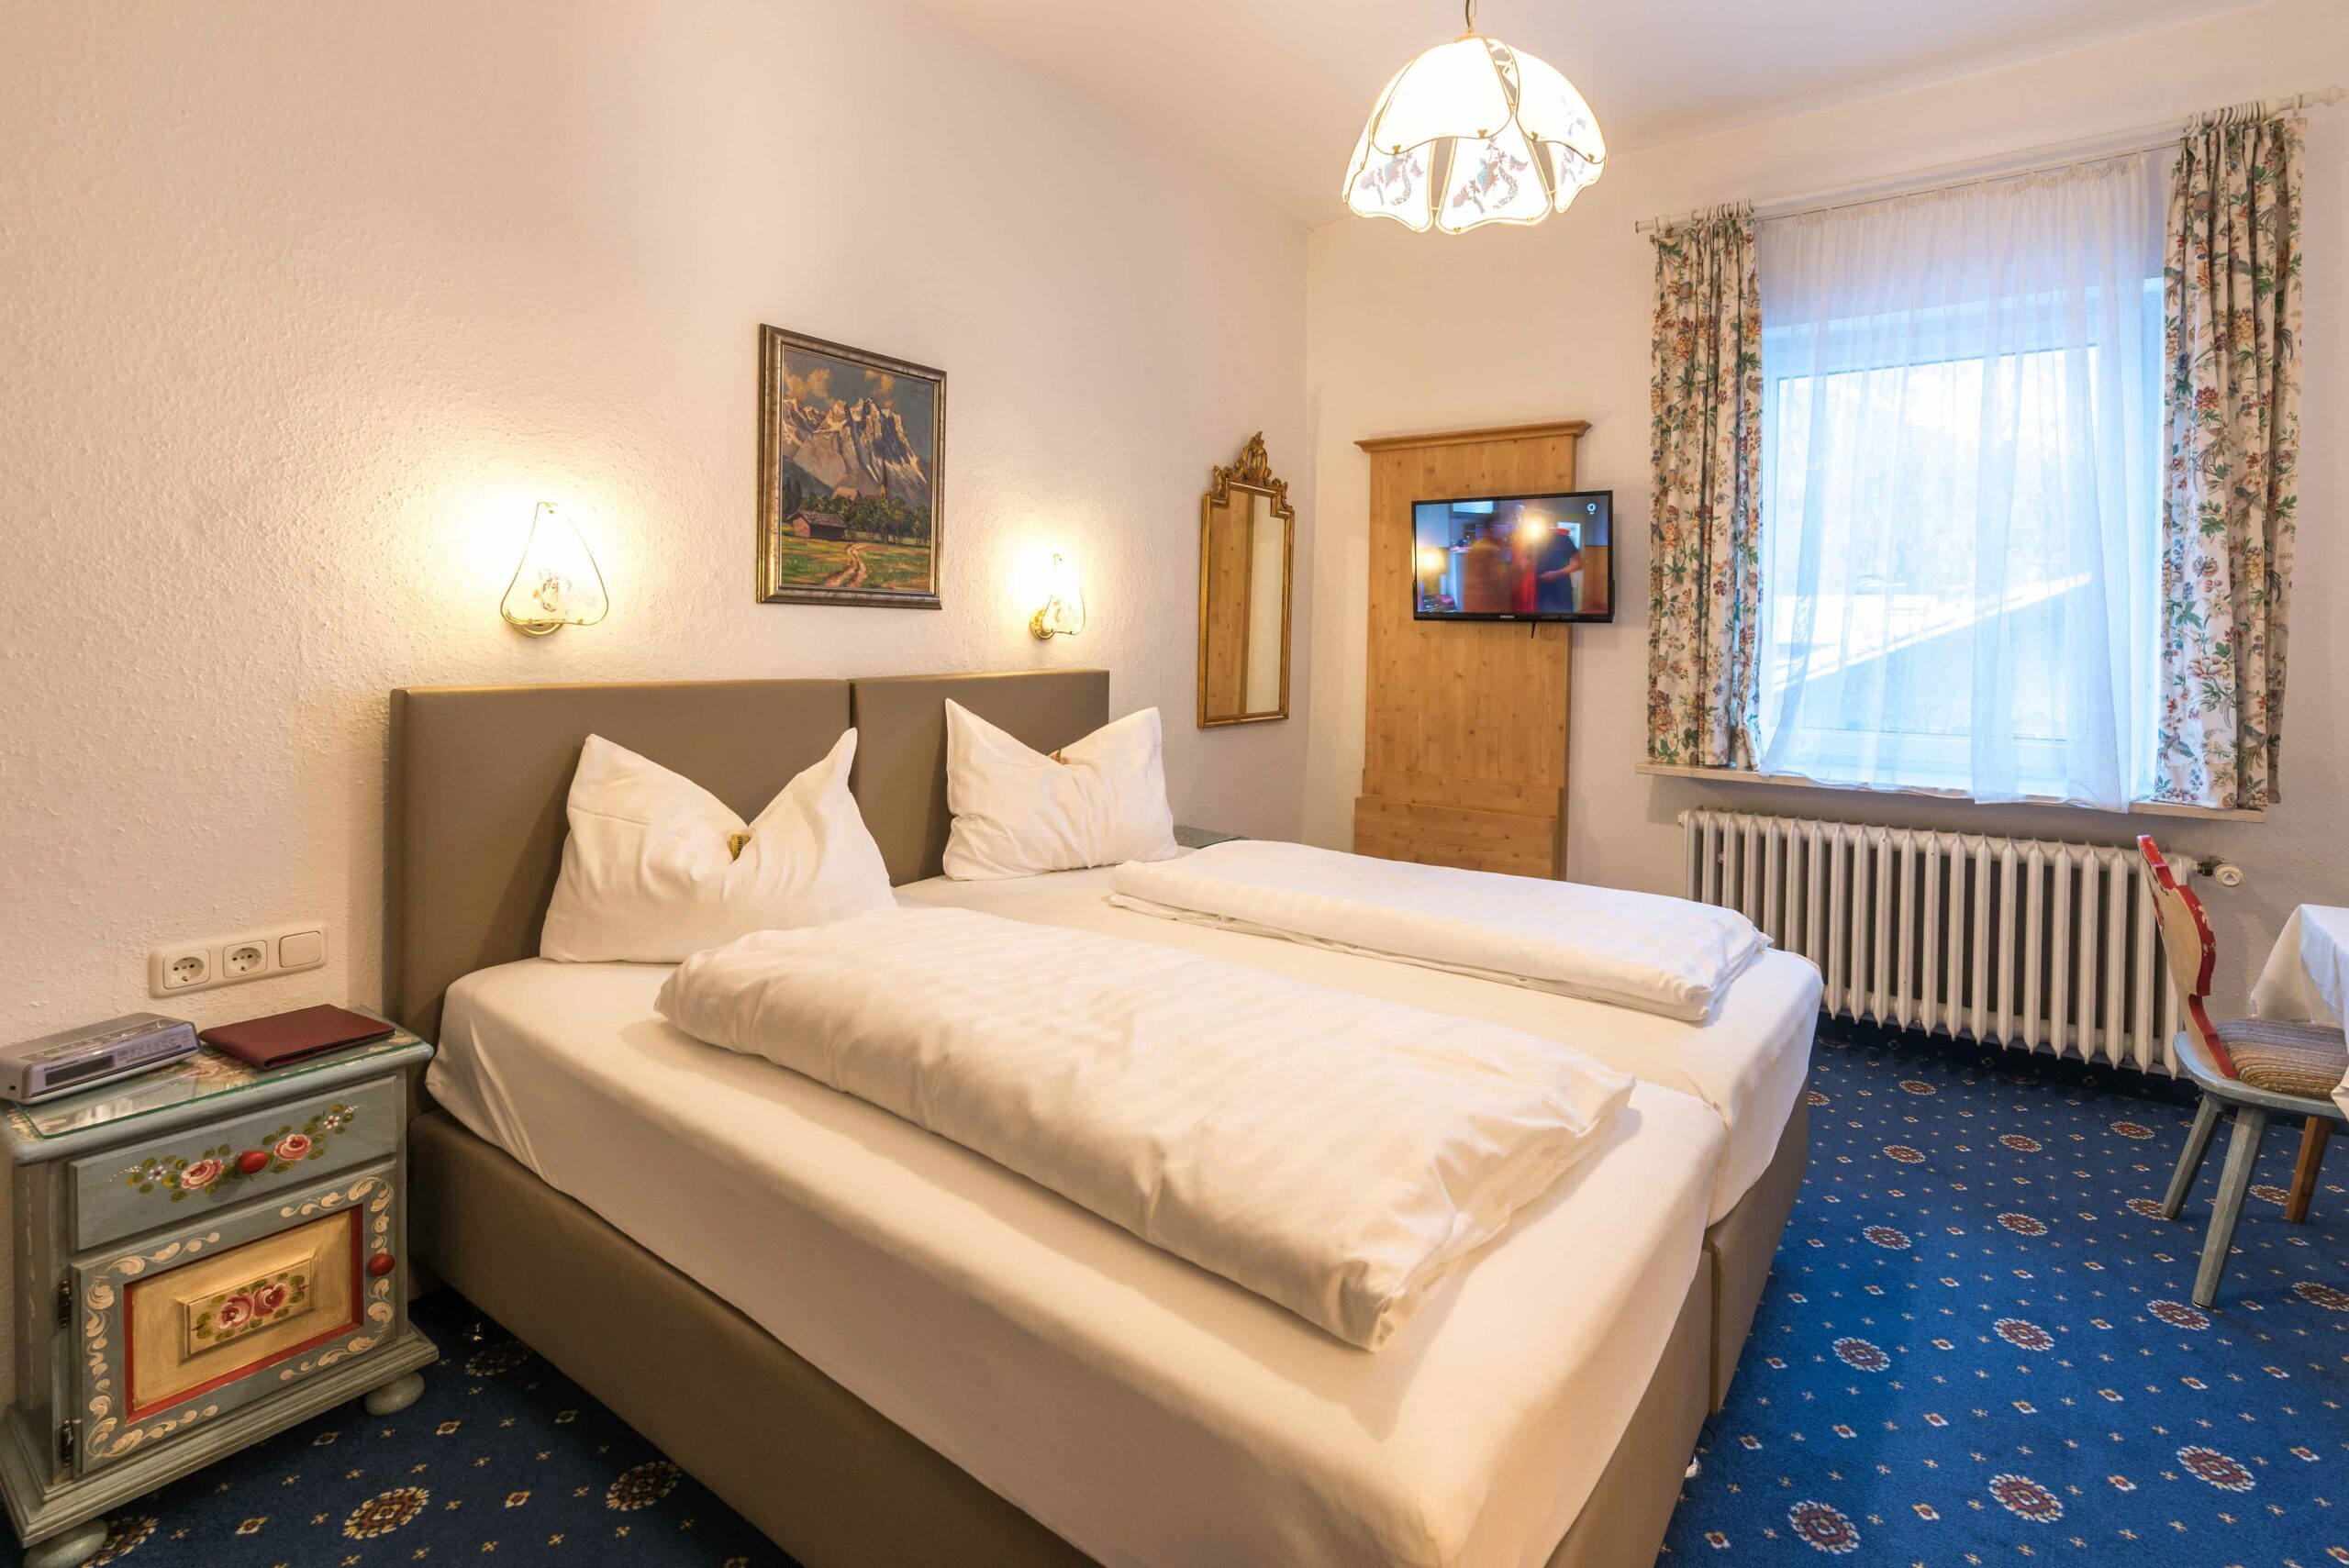 Gemütliches Zimmer im Hotel Garni Almenrausch und Edelweiß in Garmisch-Patenkirchen